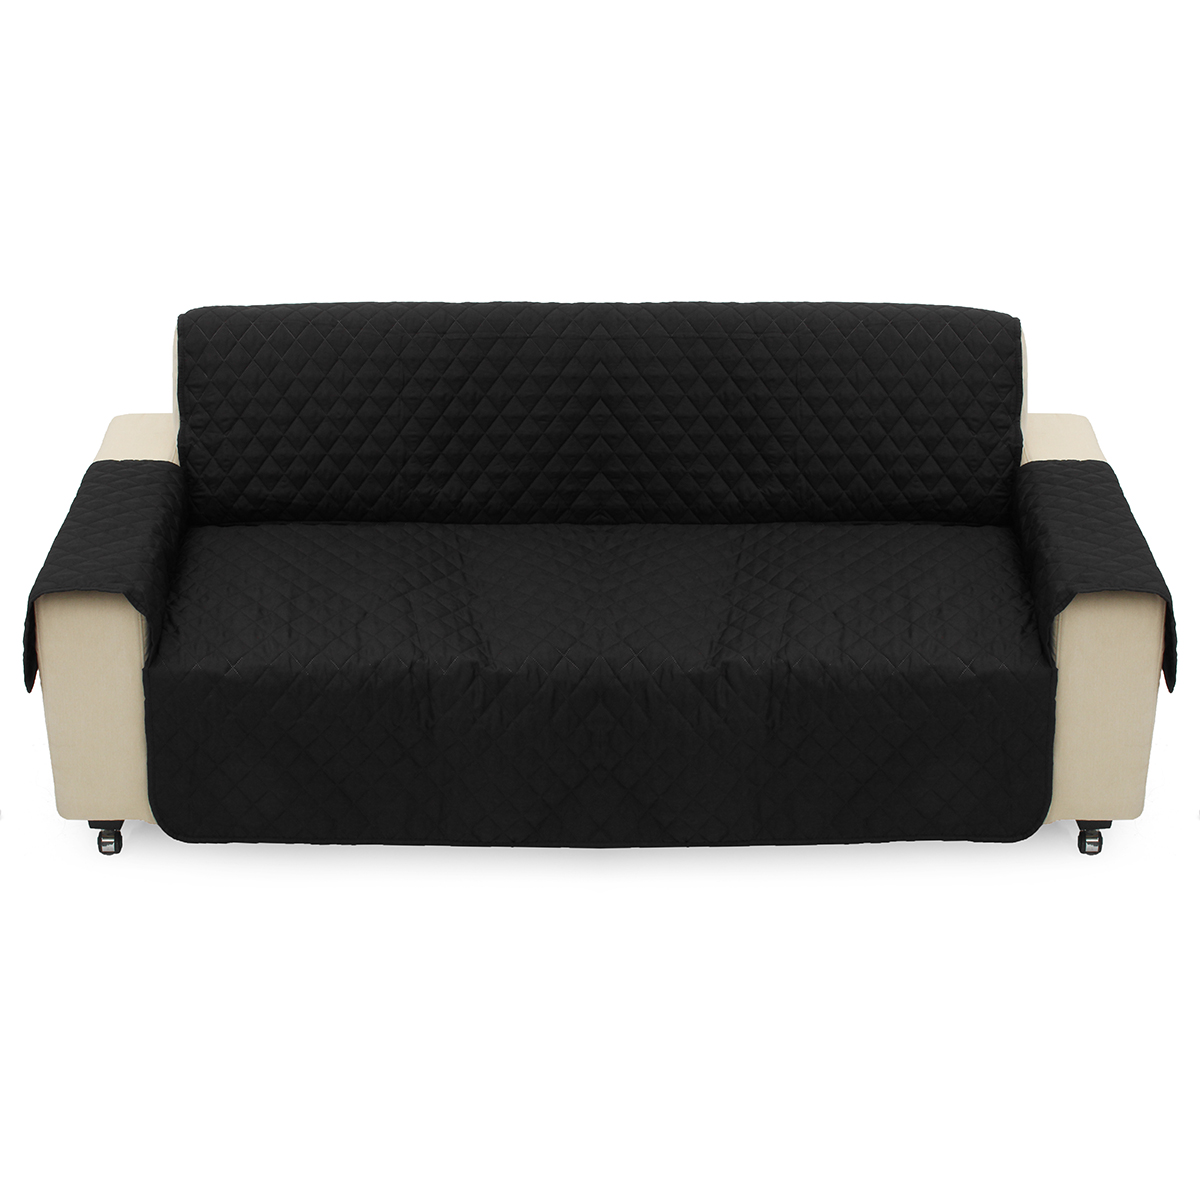 

Black Pet Диван Диван Чехол Защитные накладки Съемный ремень Водонепроницаемы Кот Pad 3 Seater Sofa Mat